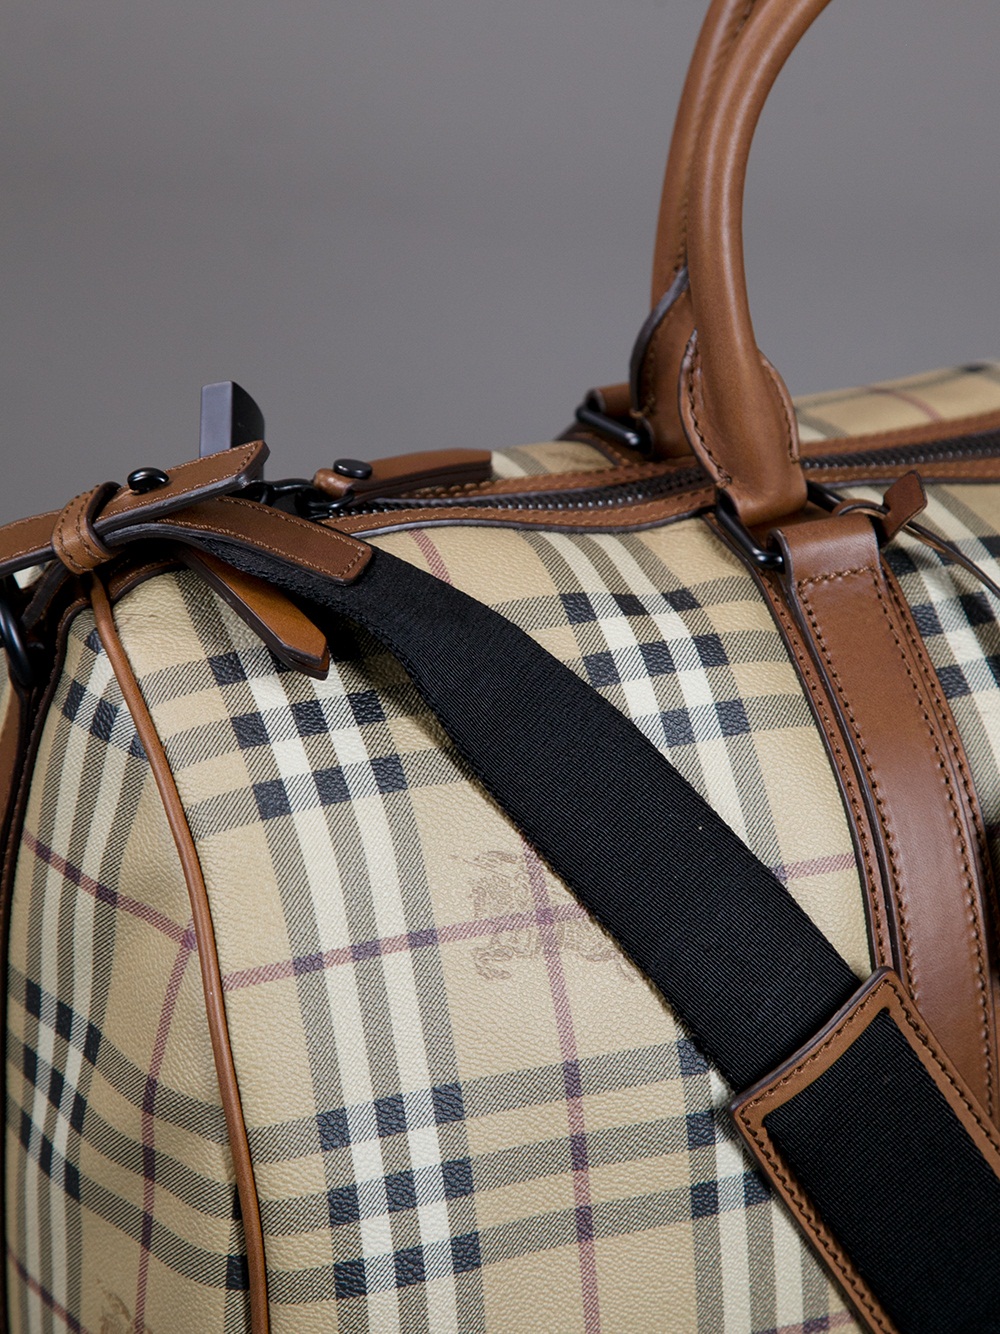 Burberry Travel Bag Nova Check Brown Leather - Burberry Luggage